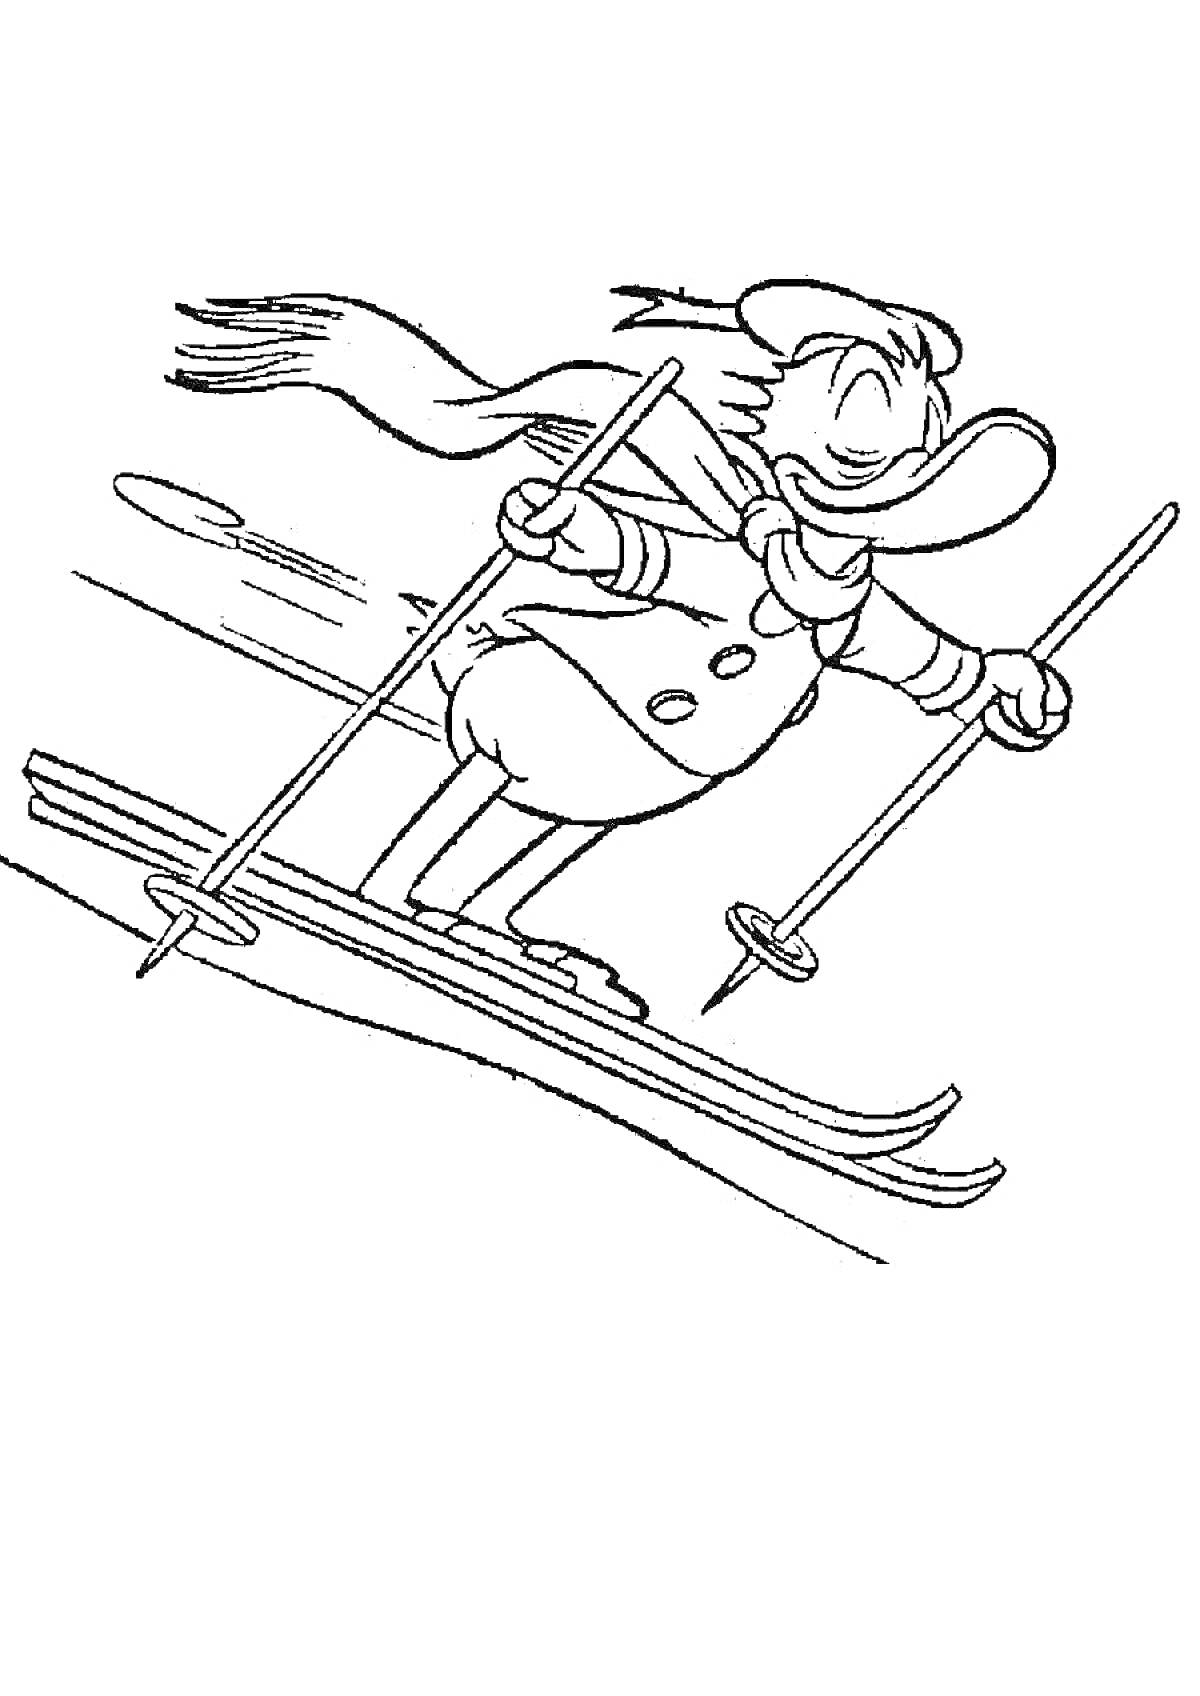 Утка на лыжах с палками, наряженная в шарф и длинную куртку